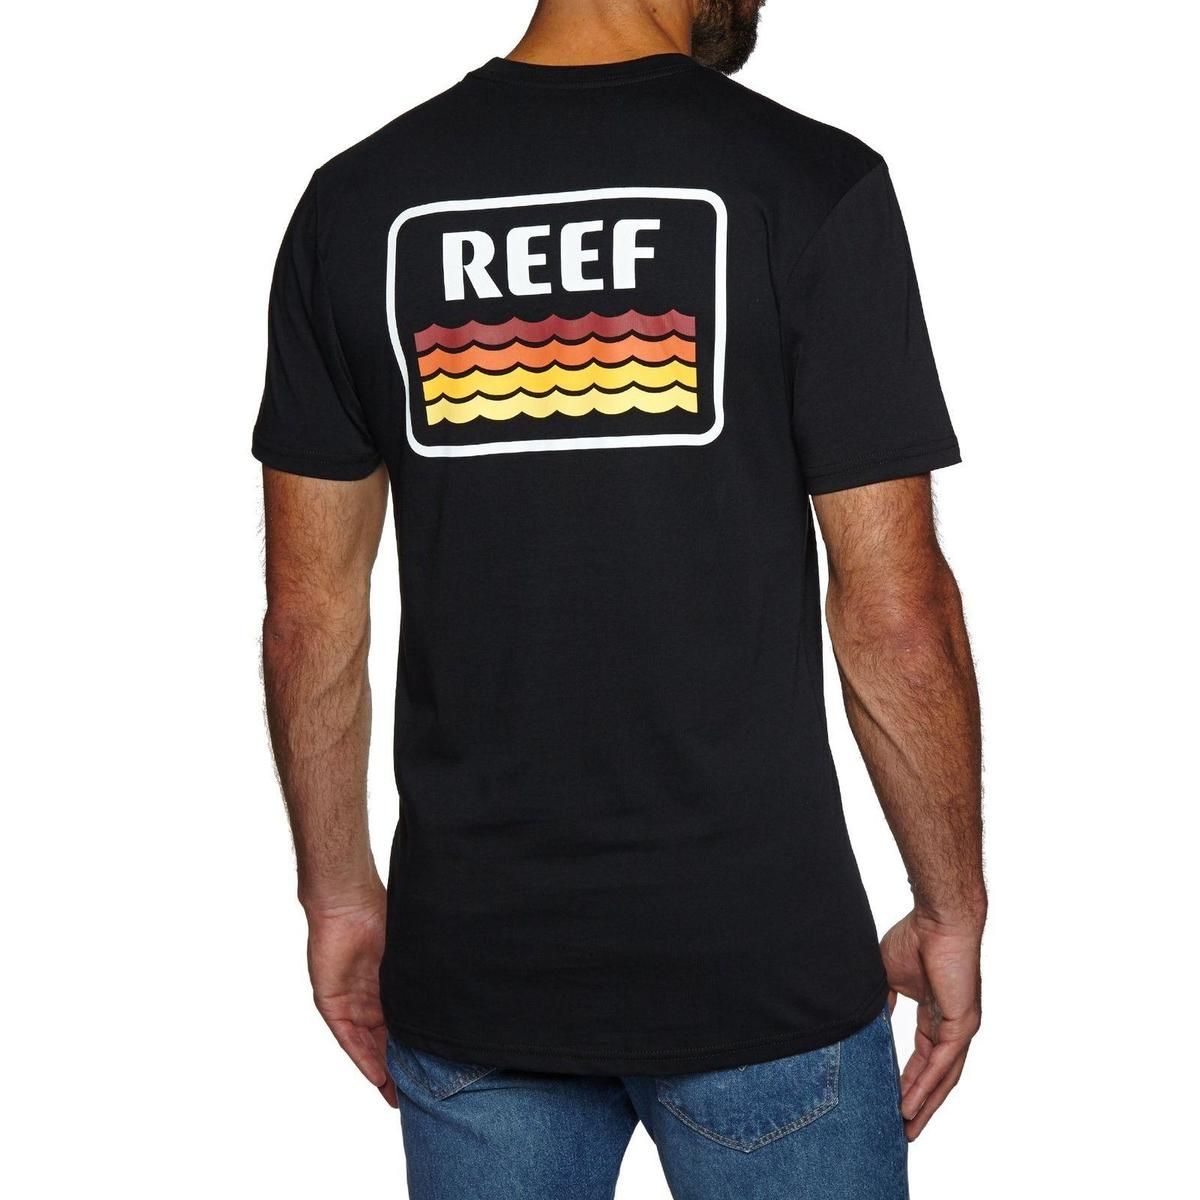 Tops venta al por mayor camiseta personalizada camiseta impresa barata Reef Sunsetter Tee negra para hombre - Todos los tamaños envío gratis camiseta barata